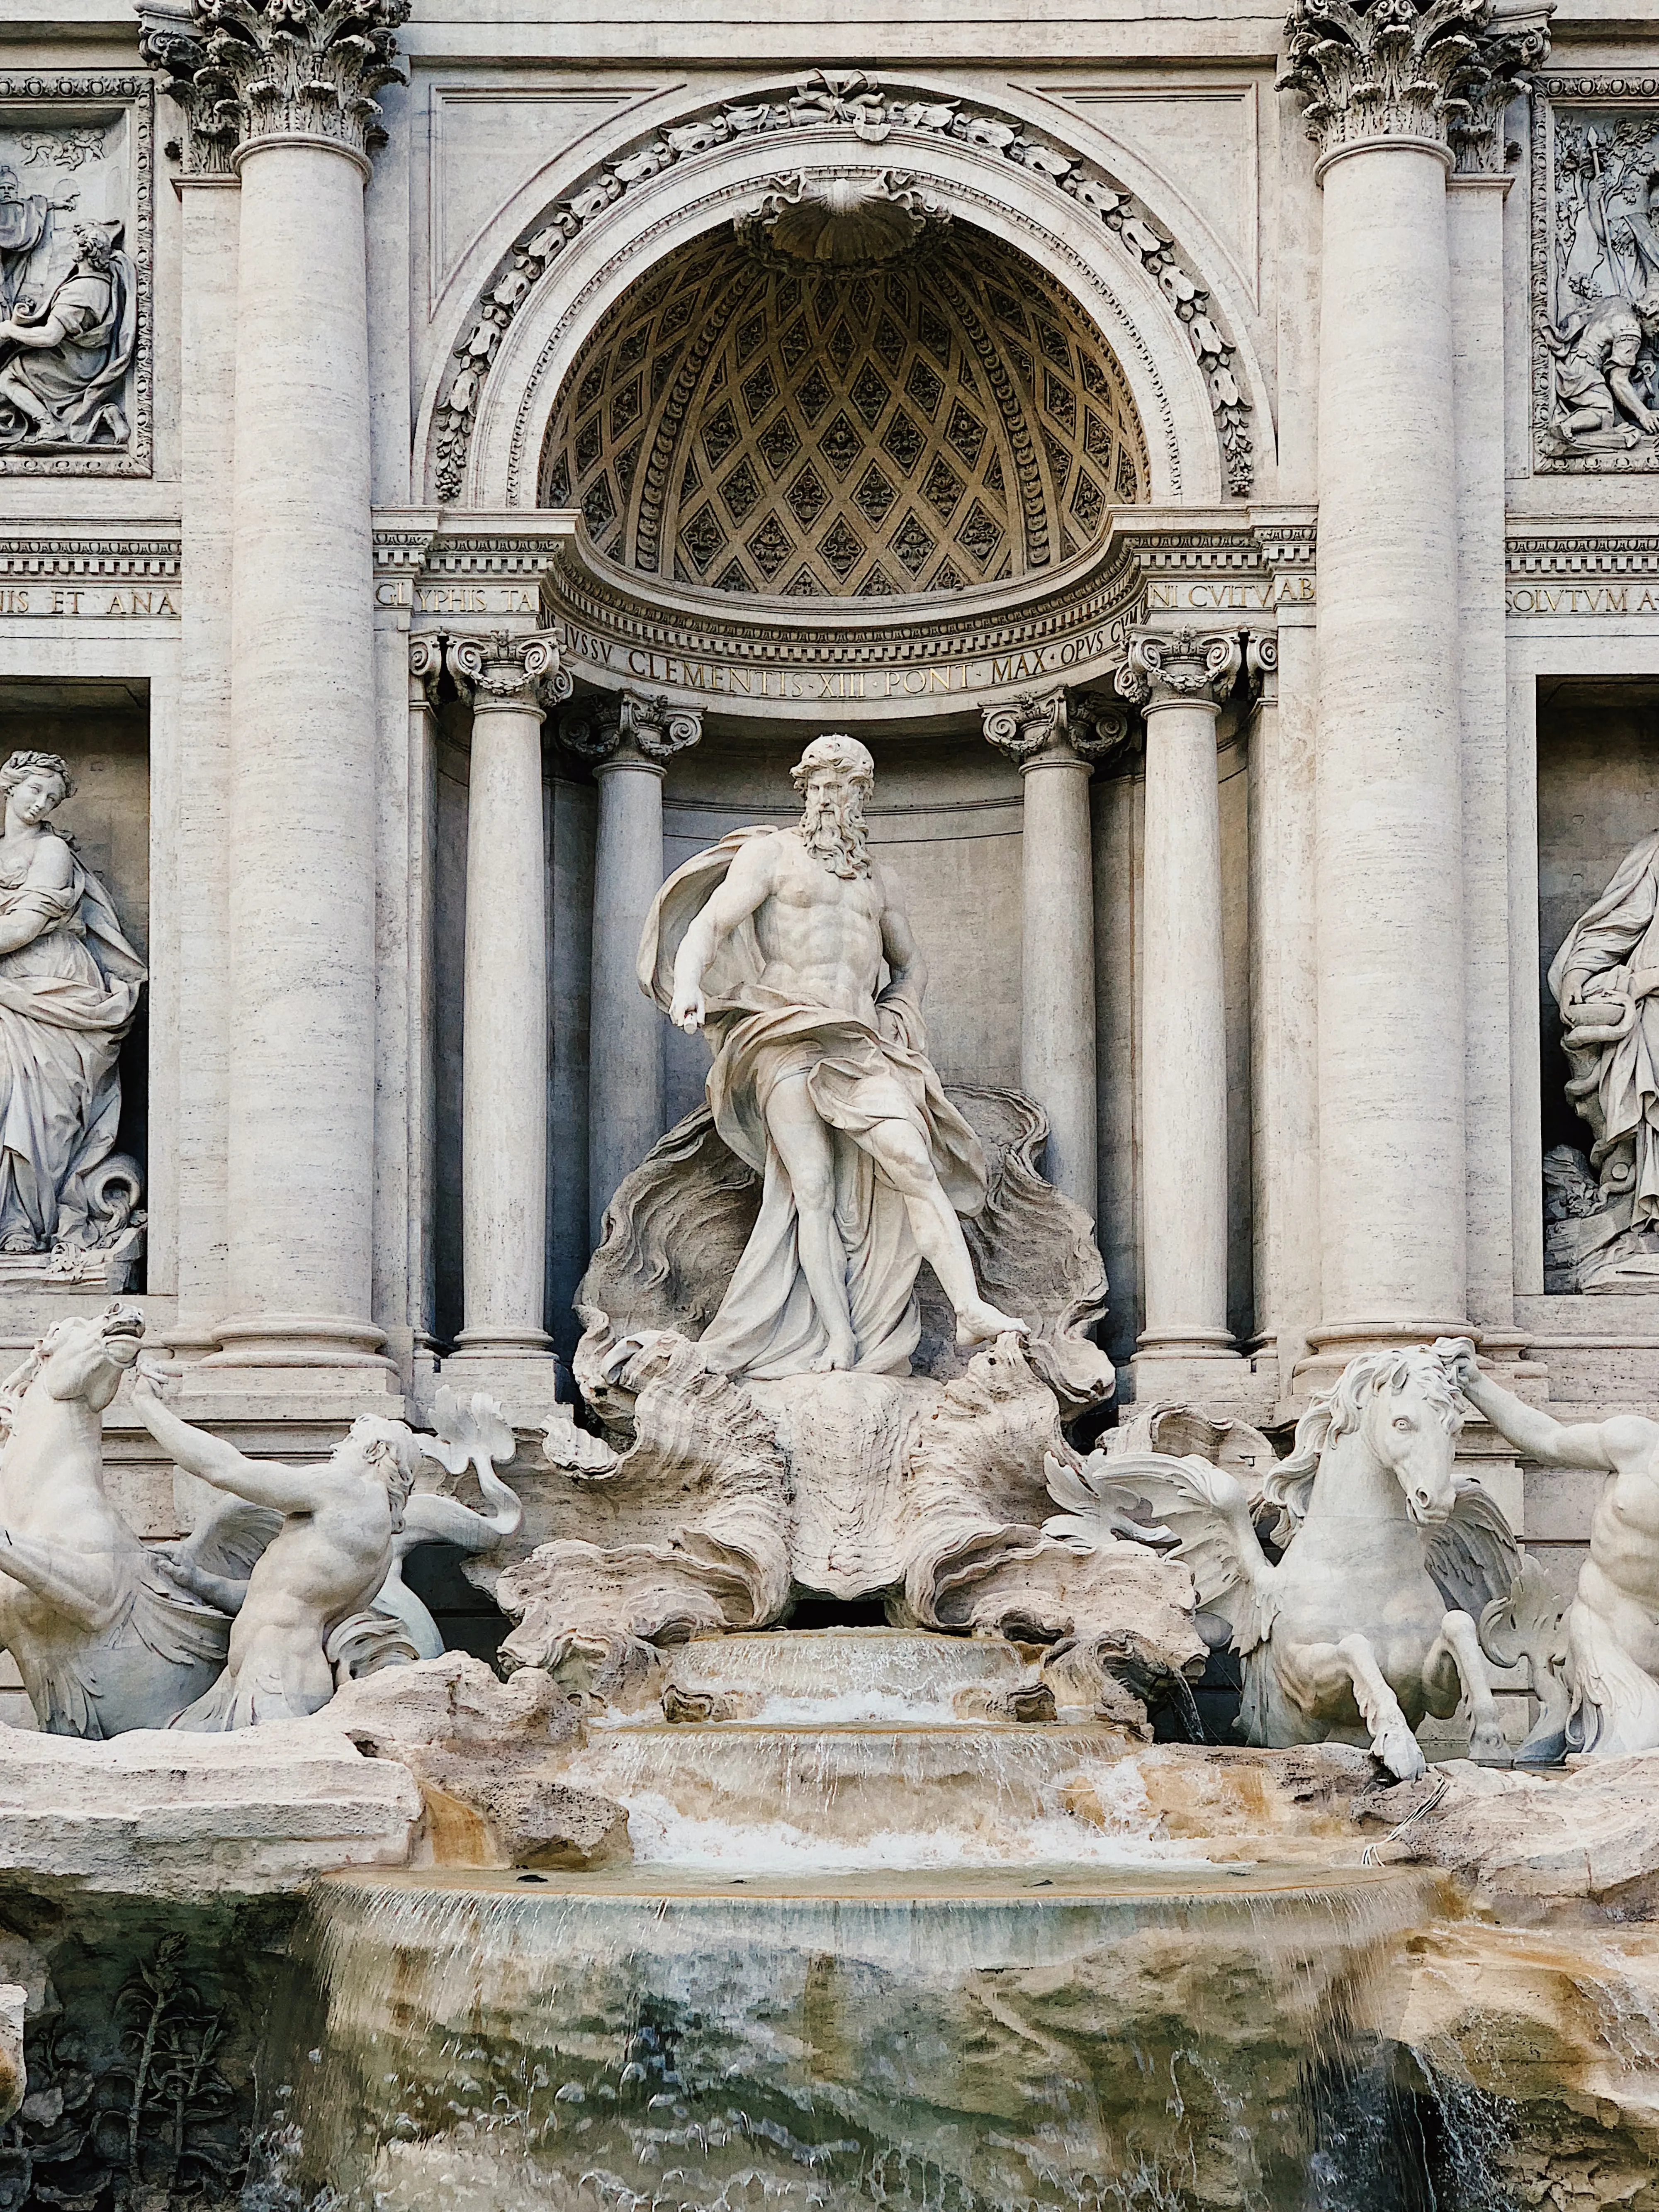 В Риме туристам хотят ограничить доступ к фонтану.